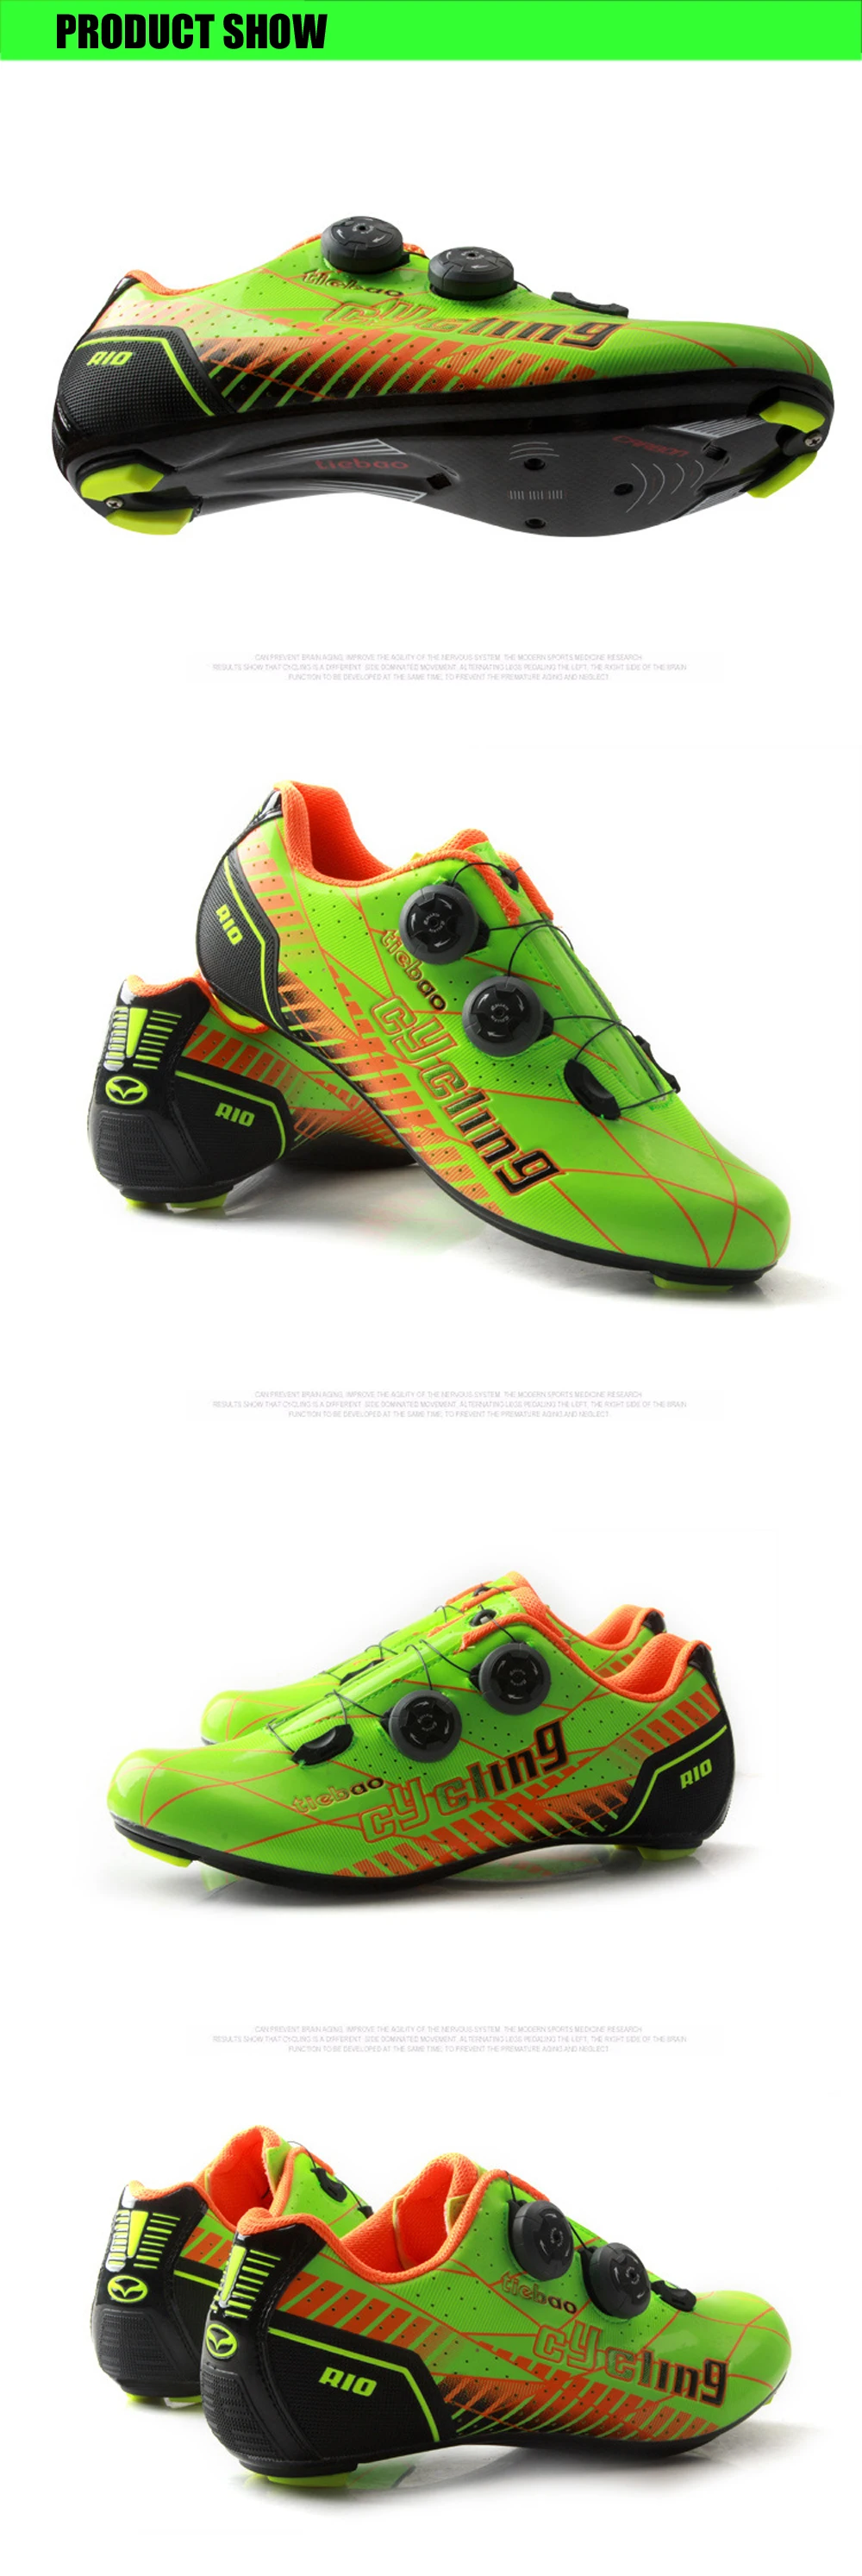 TIEBAO/Обувь для шоссейного велоспорта из углеродного волокна; Мужская обувь; zapatillas deportivas mujer; спортивные кроссовки для велосипеда; обувь для шоссейного велосипеда